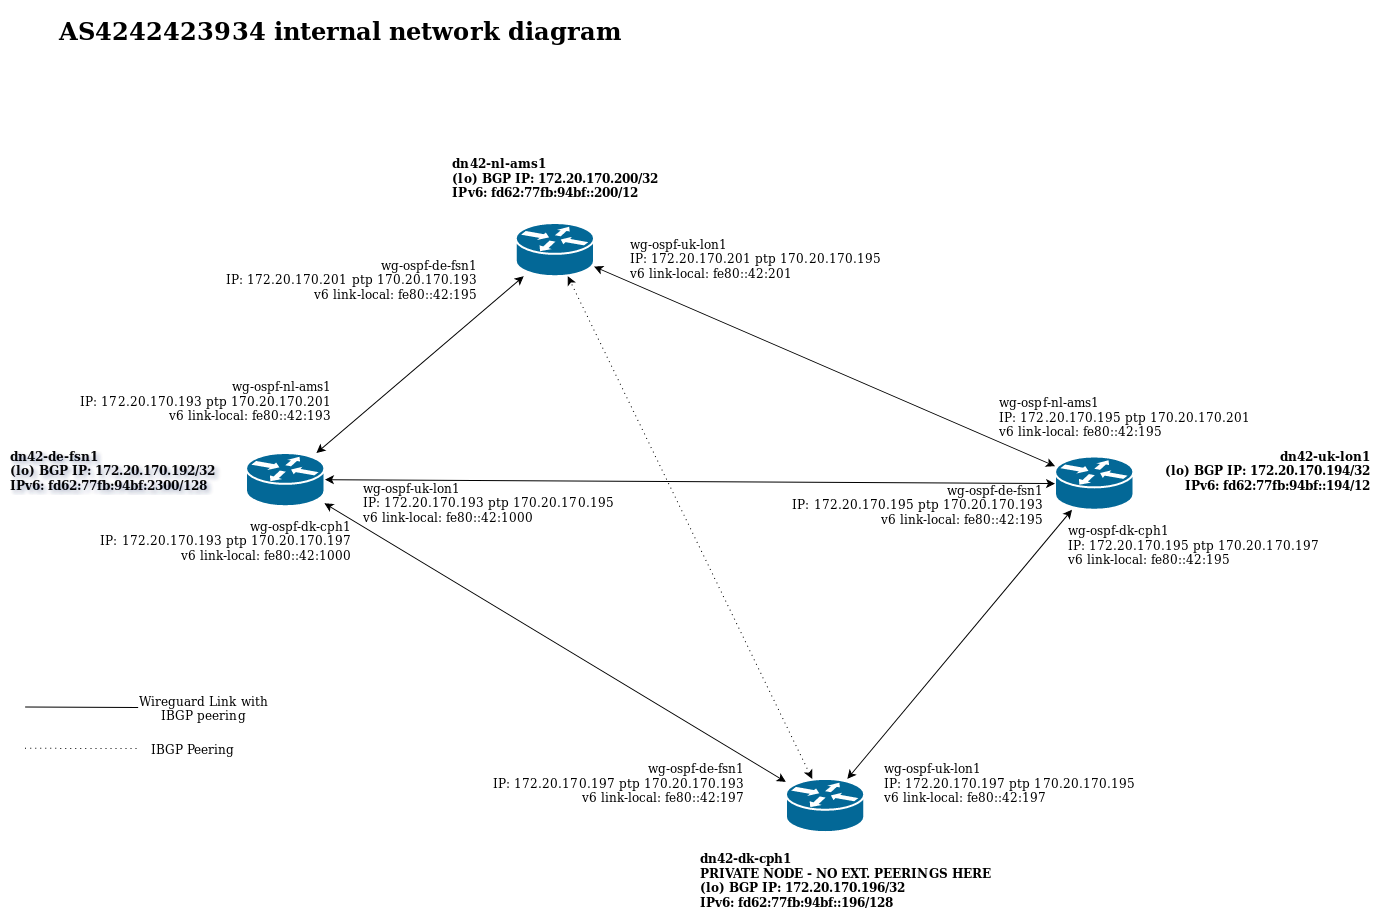 Hessnet DN42 nodes